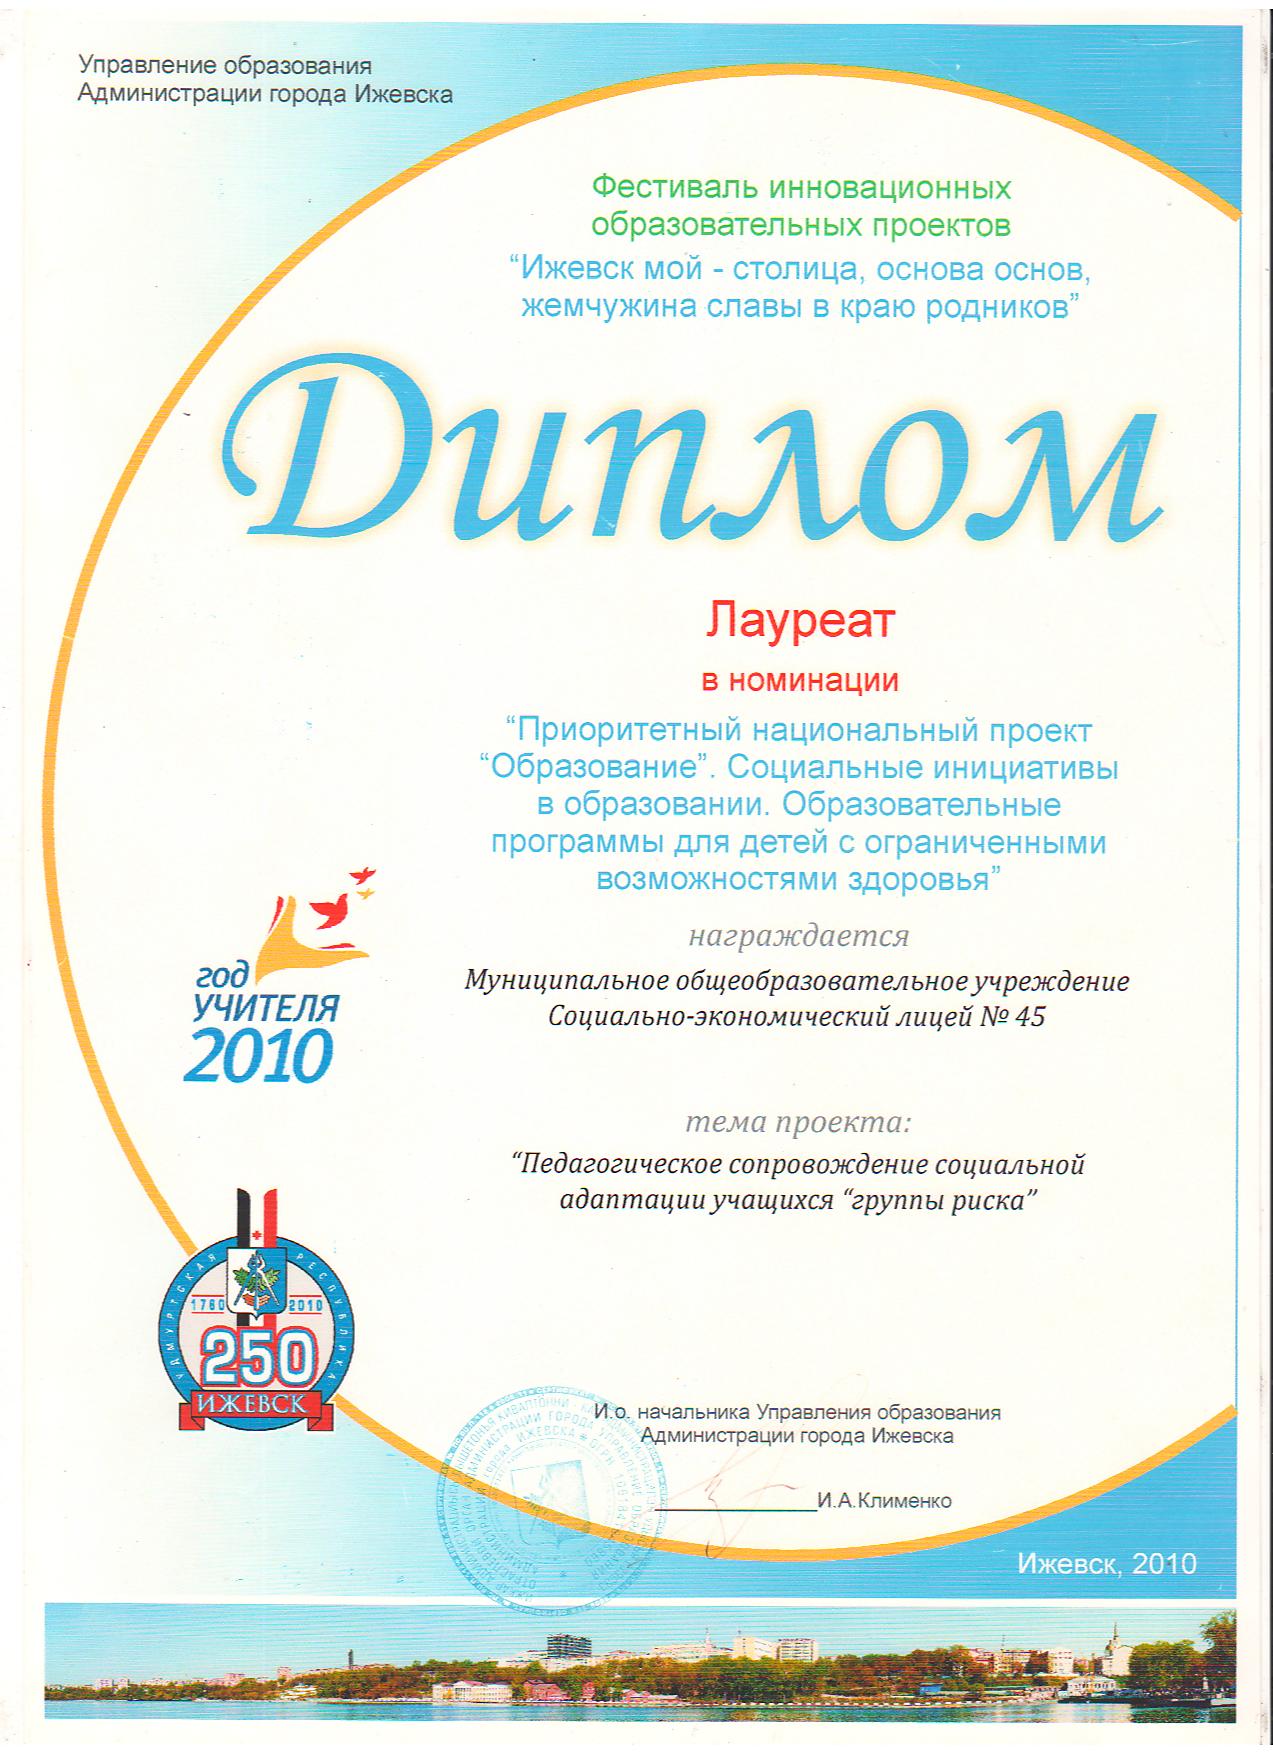 Диплом в номинации "Приоритетный национальный проект "Образование"